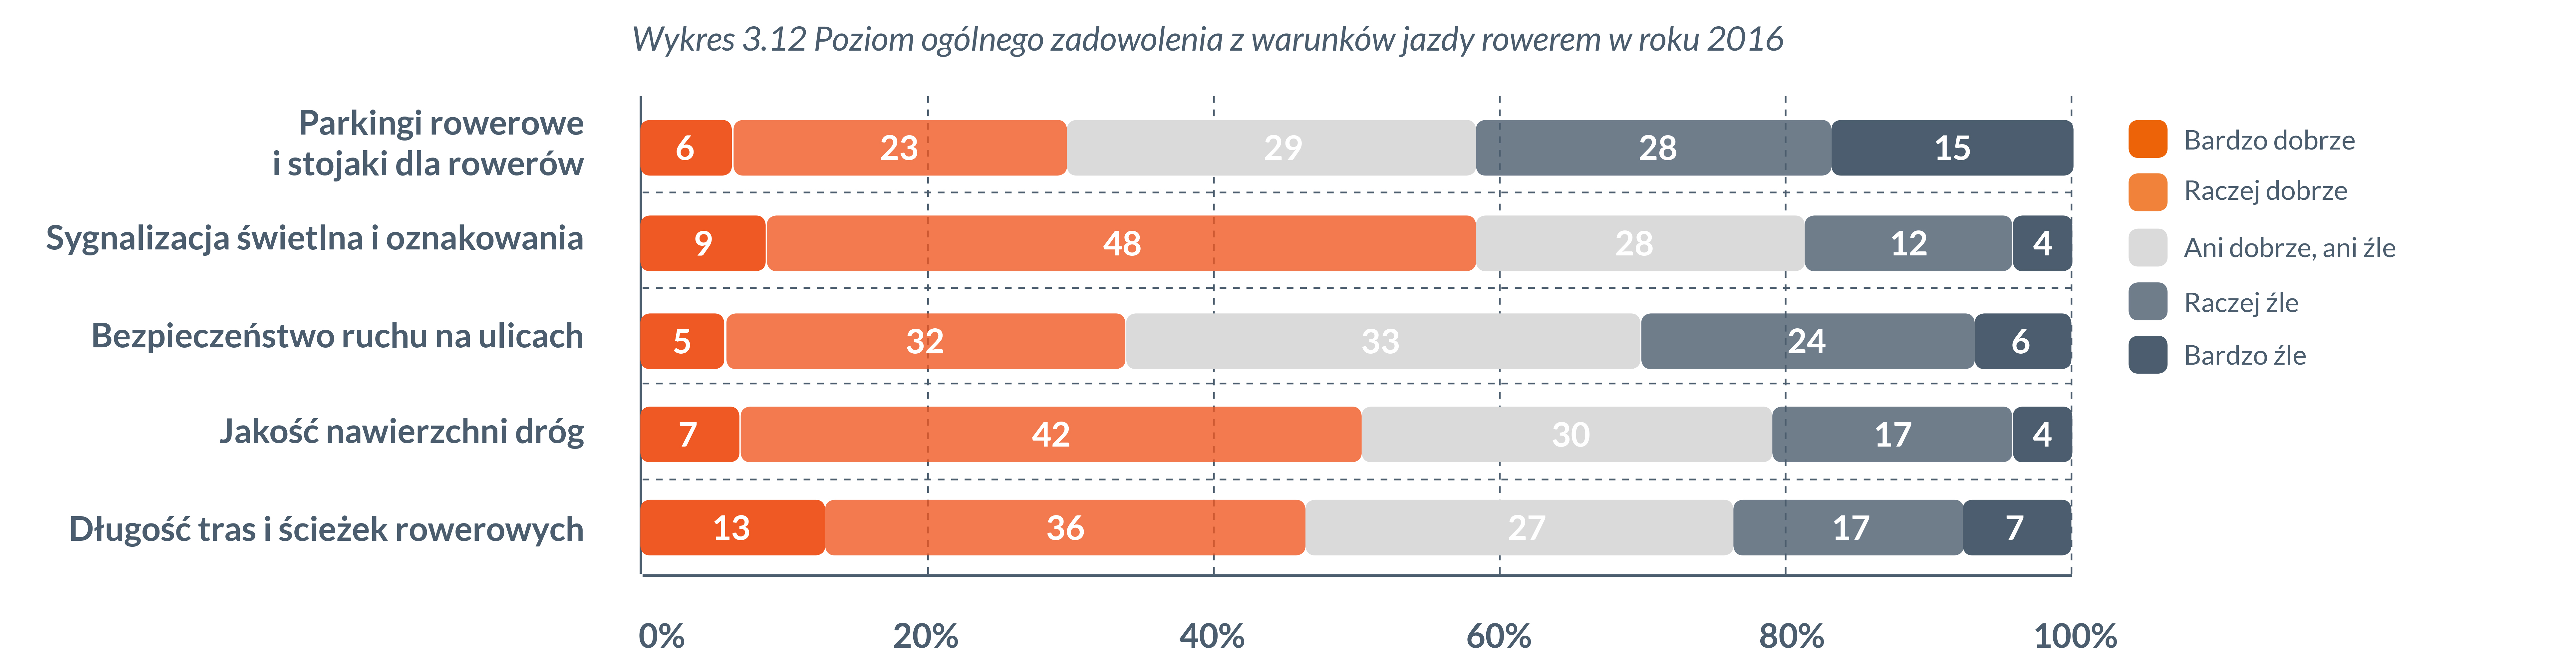 poziom-ogolnego-zadowolenia-z-warunkow-jazdy-rowerem-raport-rowerowa-polska-2016